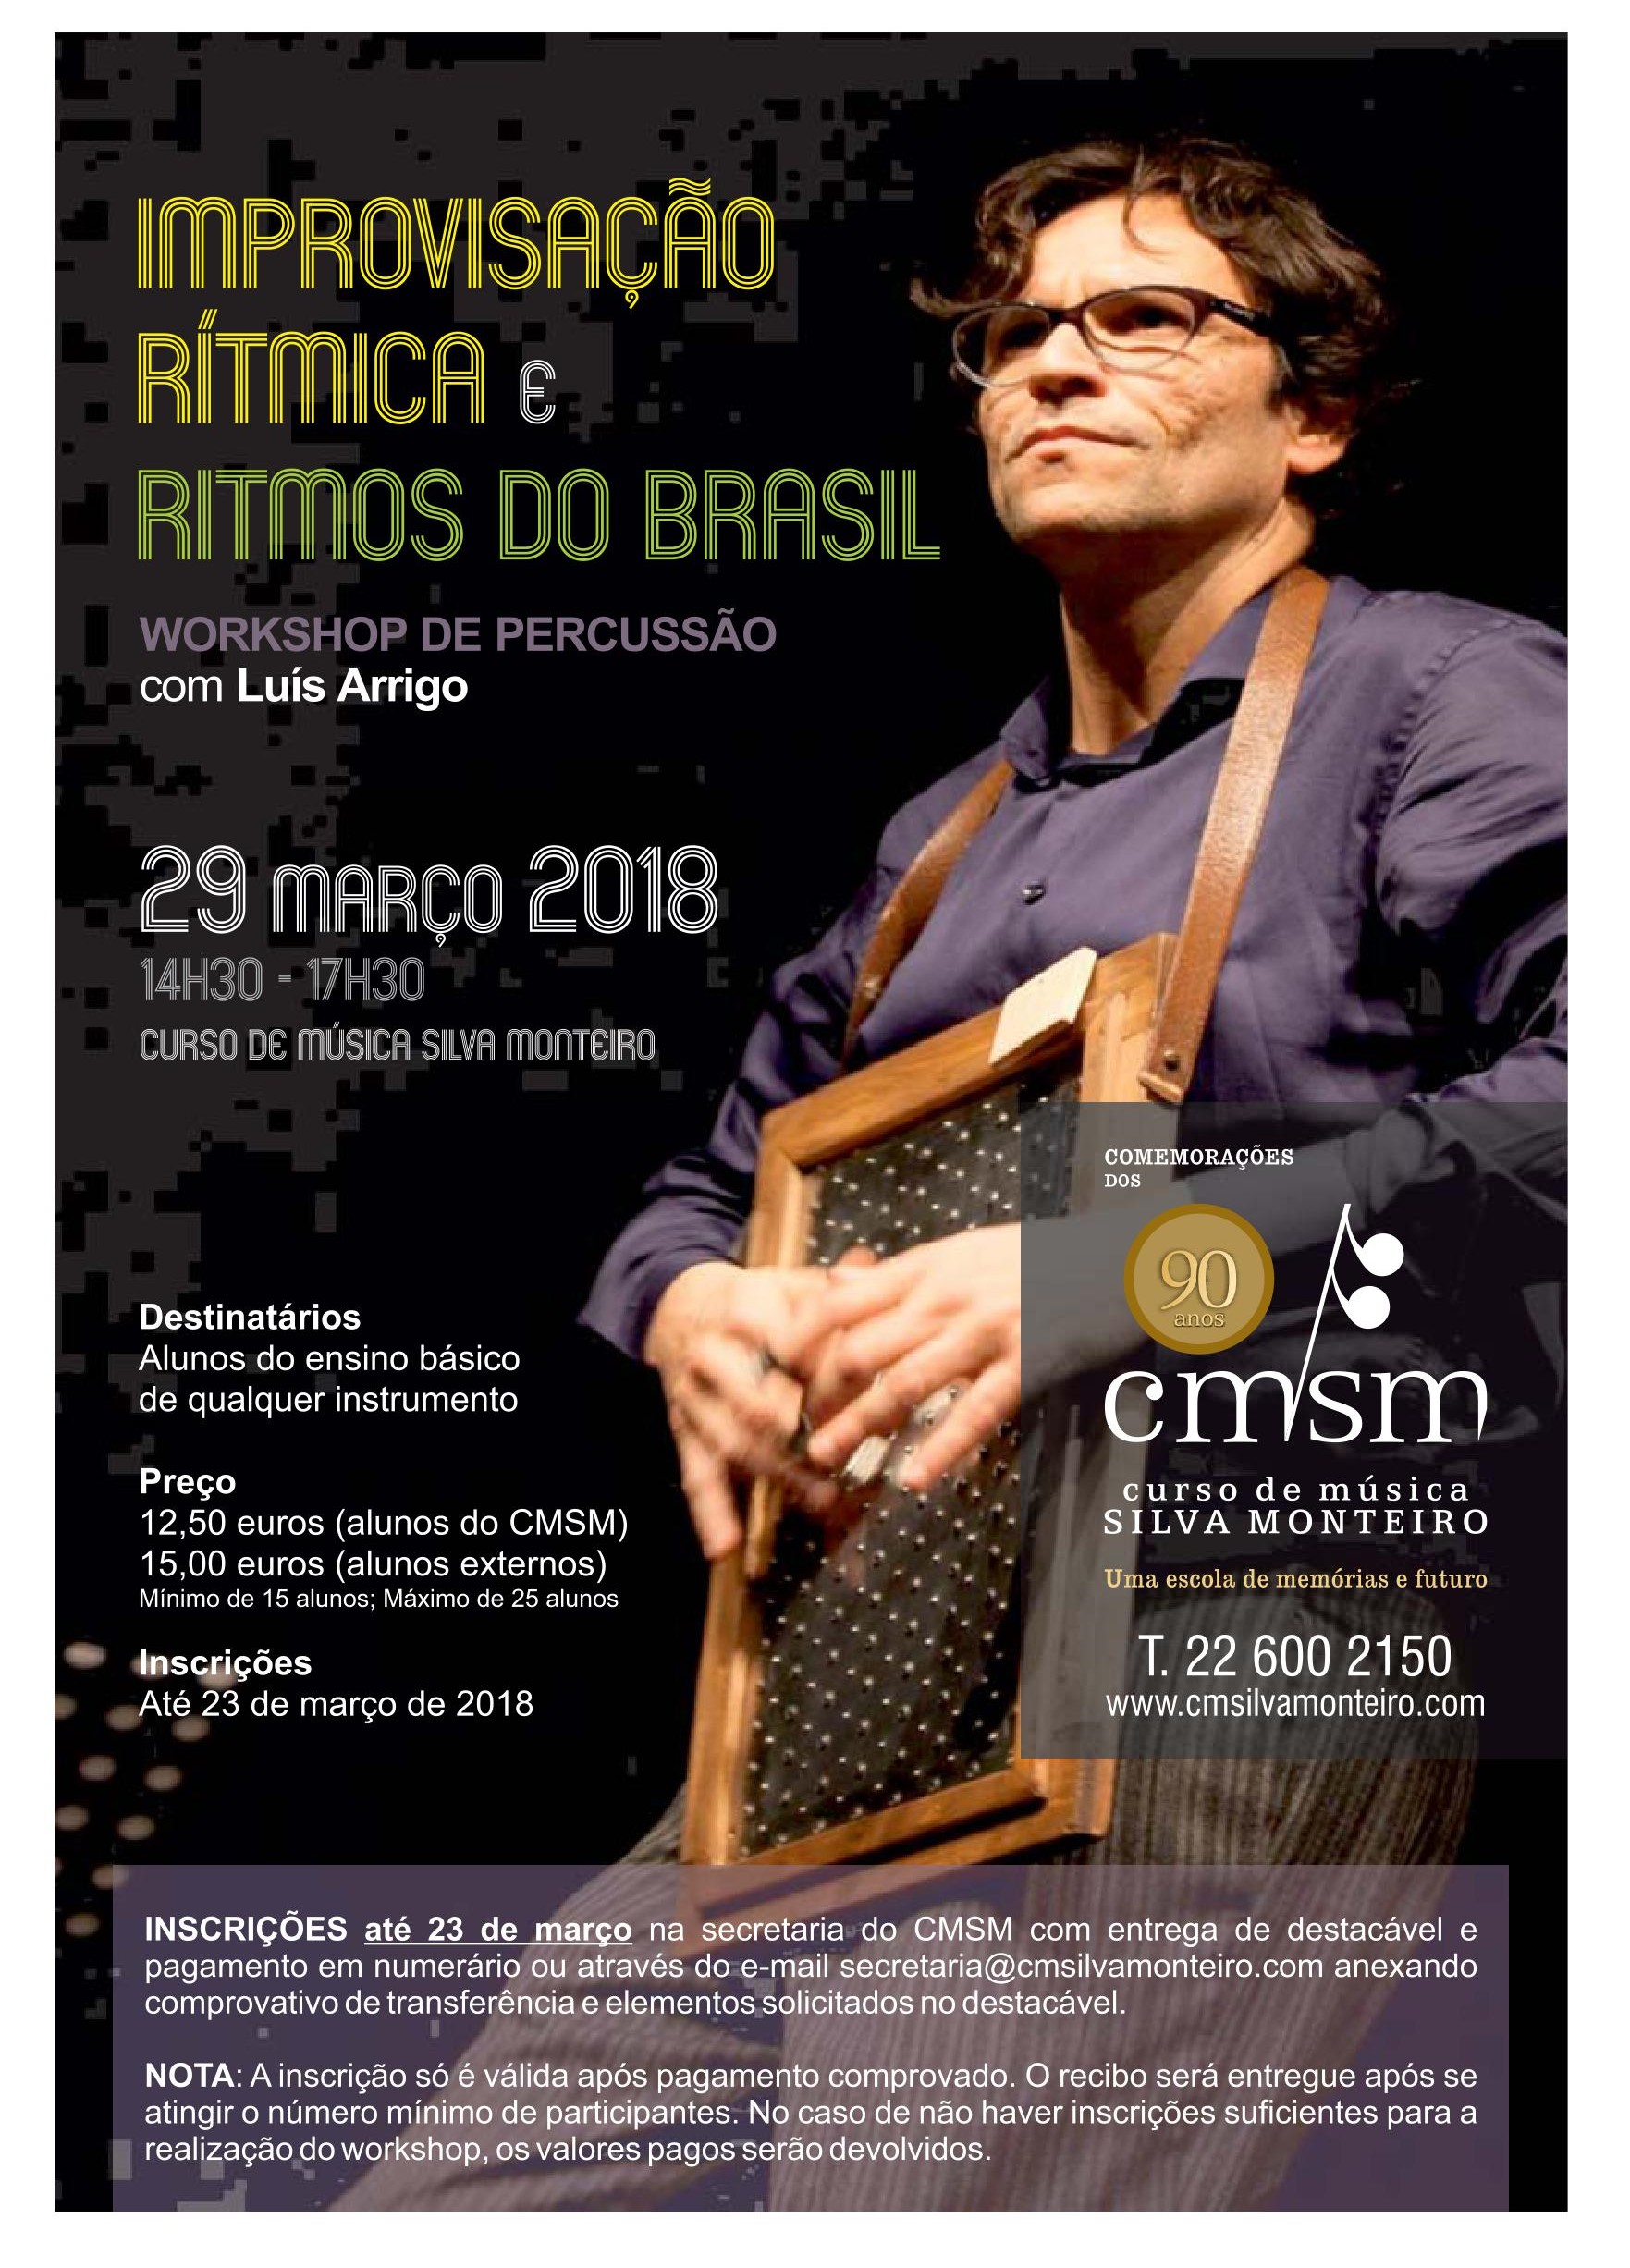 IMPROVISACAO RITMICA RITMOS DO BRASIL folheto frente1